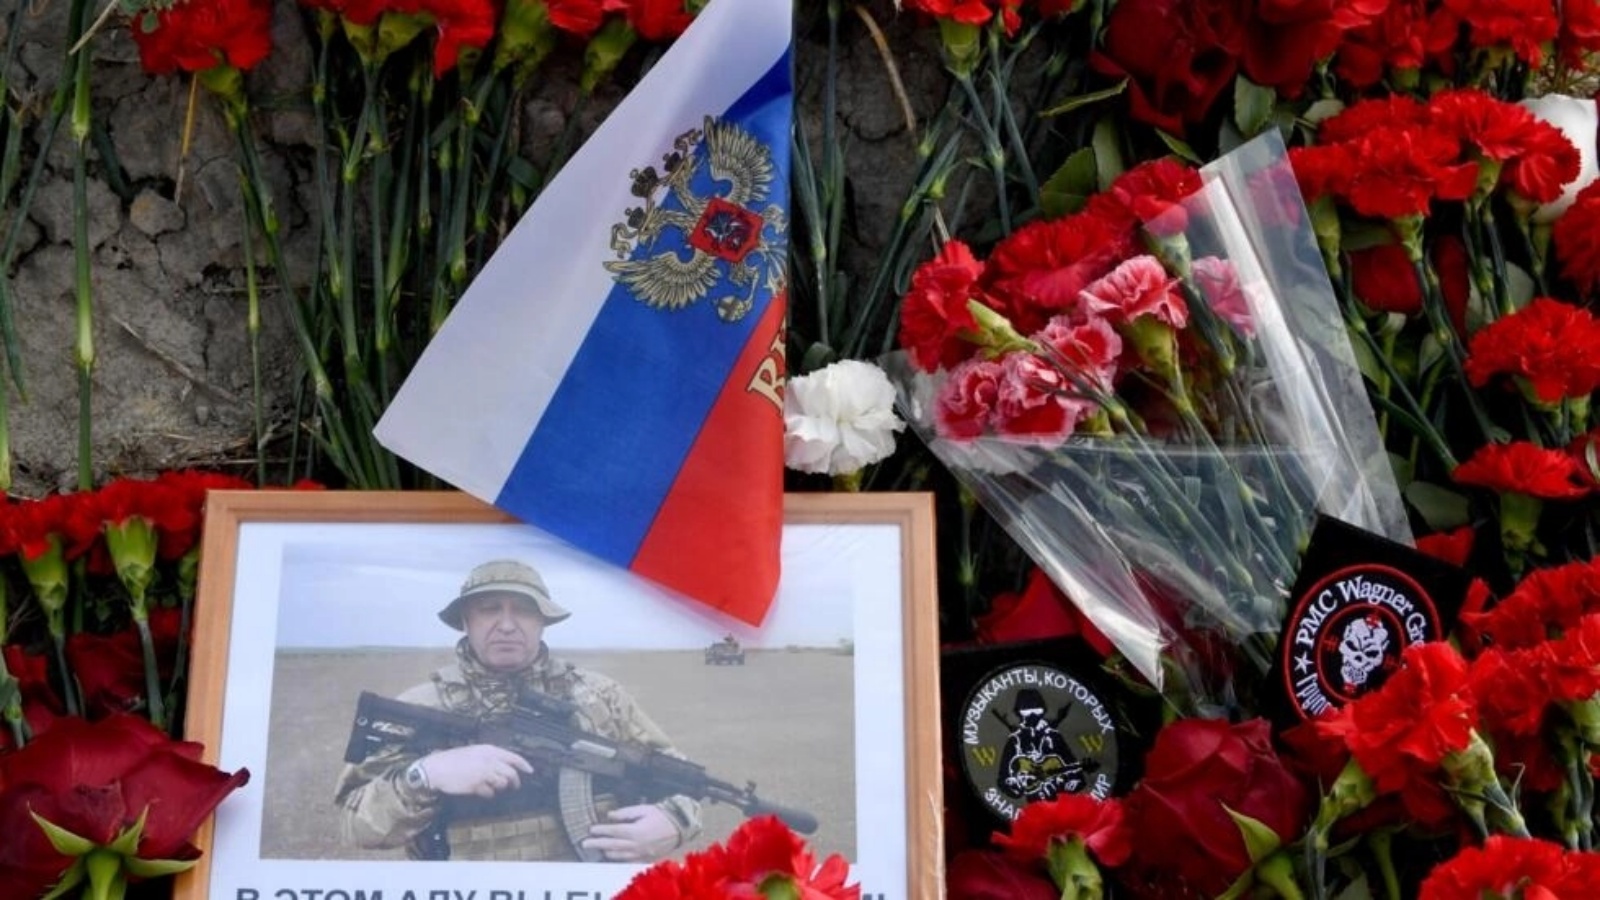 صورة ليفغيني بريغوجين وسط الزهور أمام مركز للمجموعة العسكرية الخاصة الروسية فاغنر في سان بطرسبرغ في 25 أغسطس 2023 